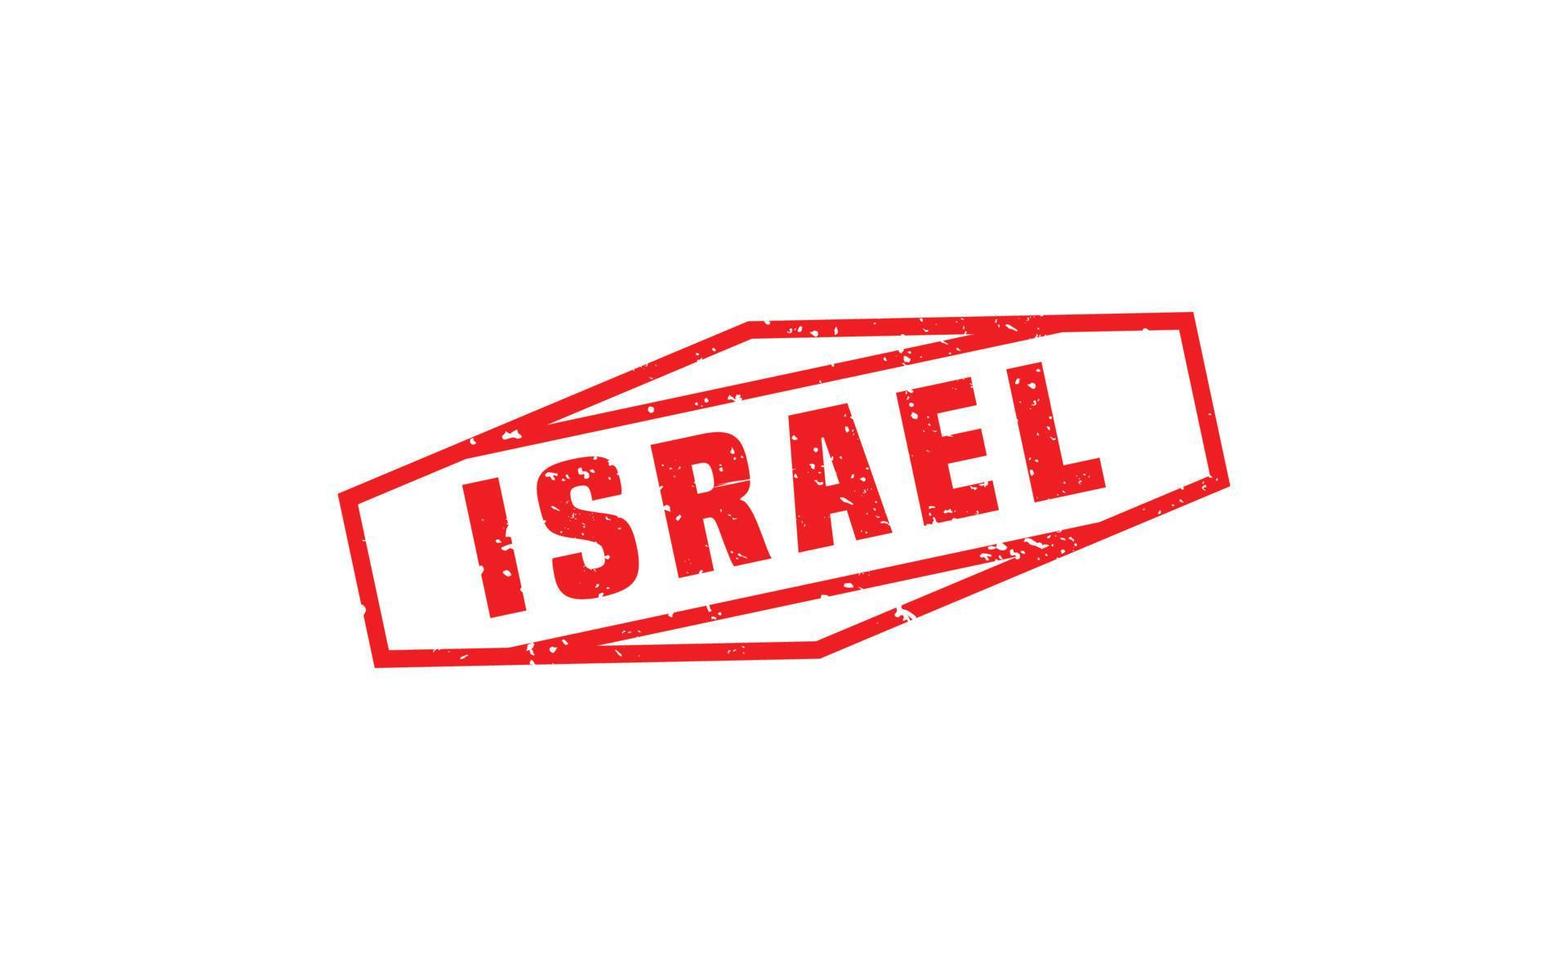 Goma de sello de israel con estilo grunge sobre fondo blanco vector